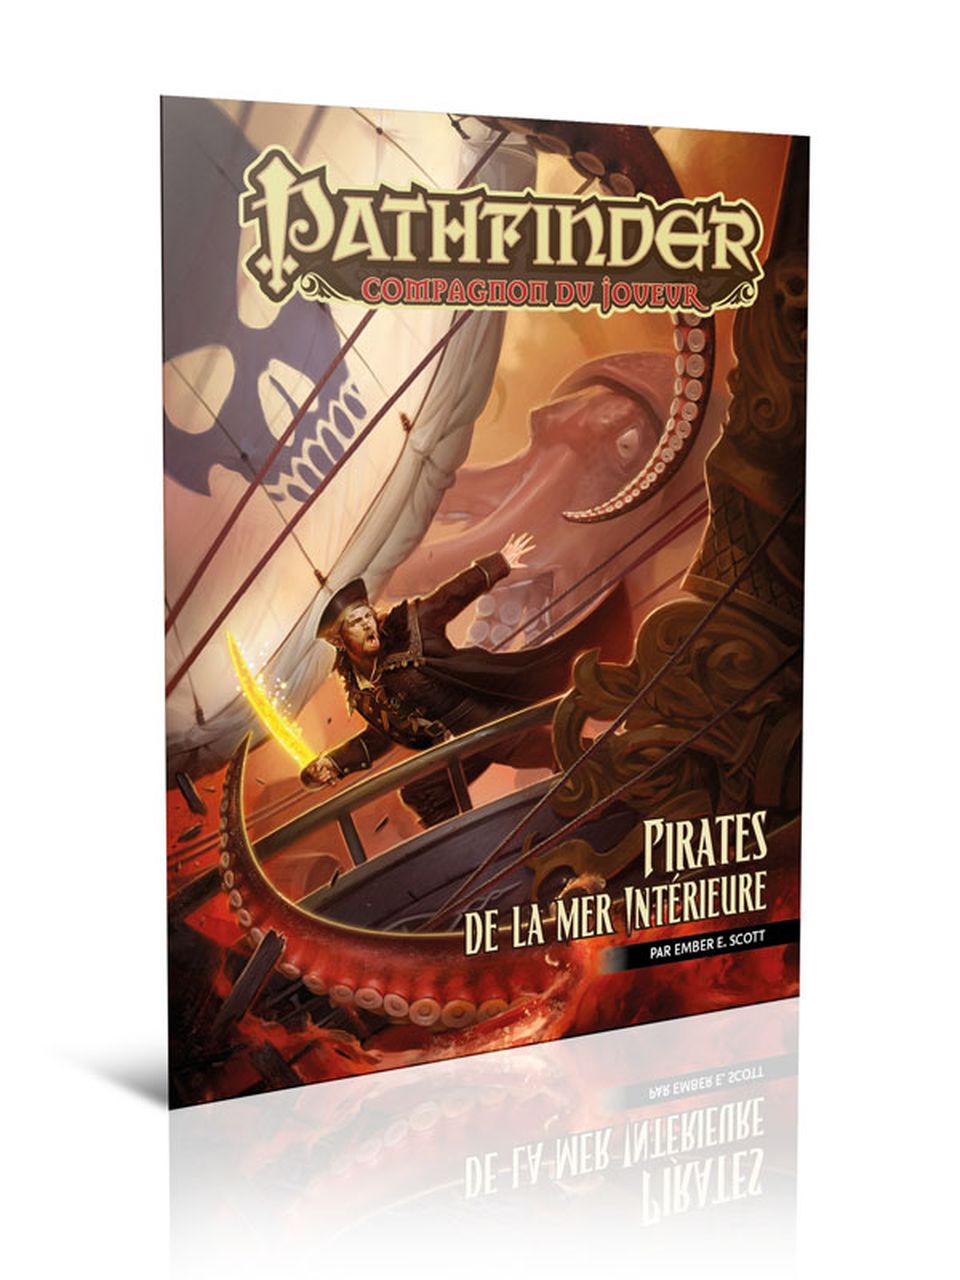 Pathfinder Compagnon du joueur - Pirates de la mer Intérieure image